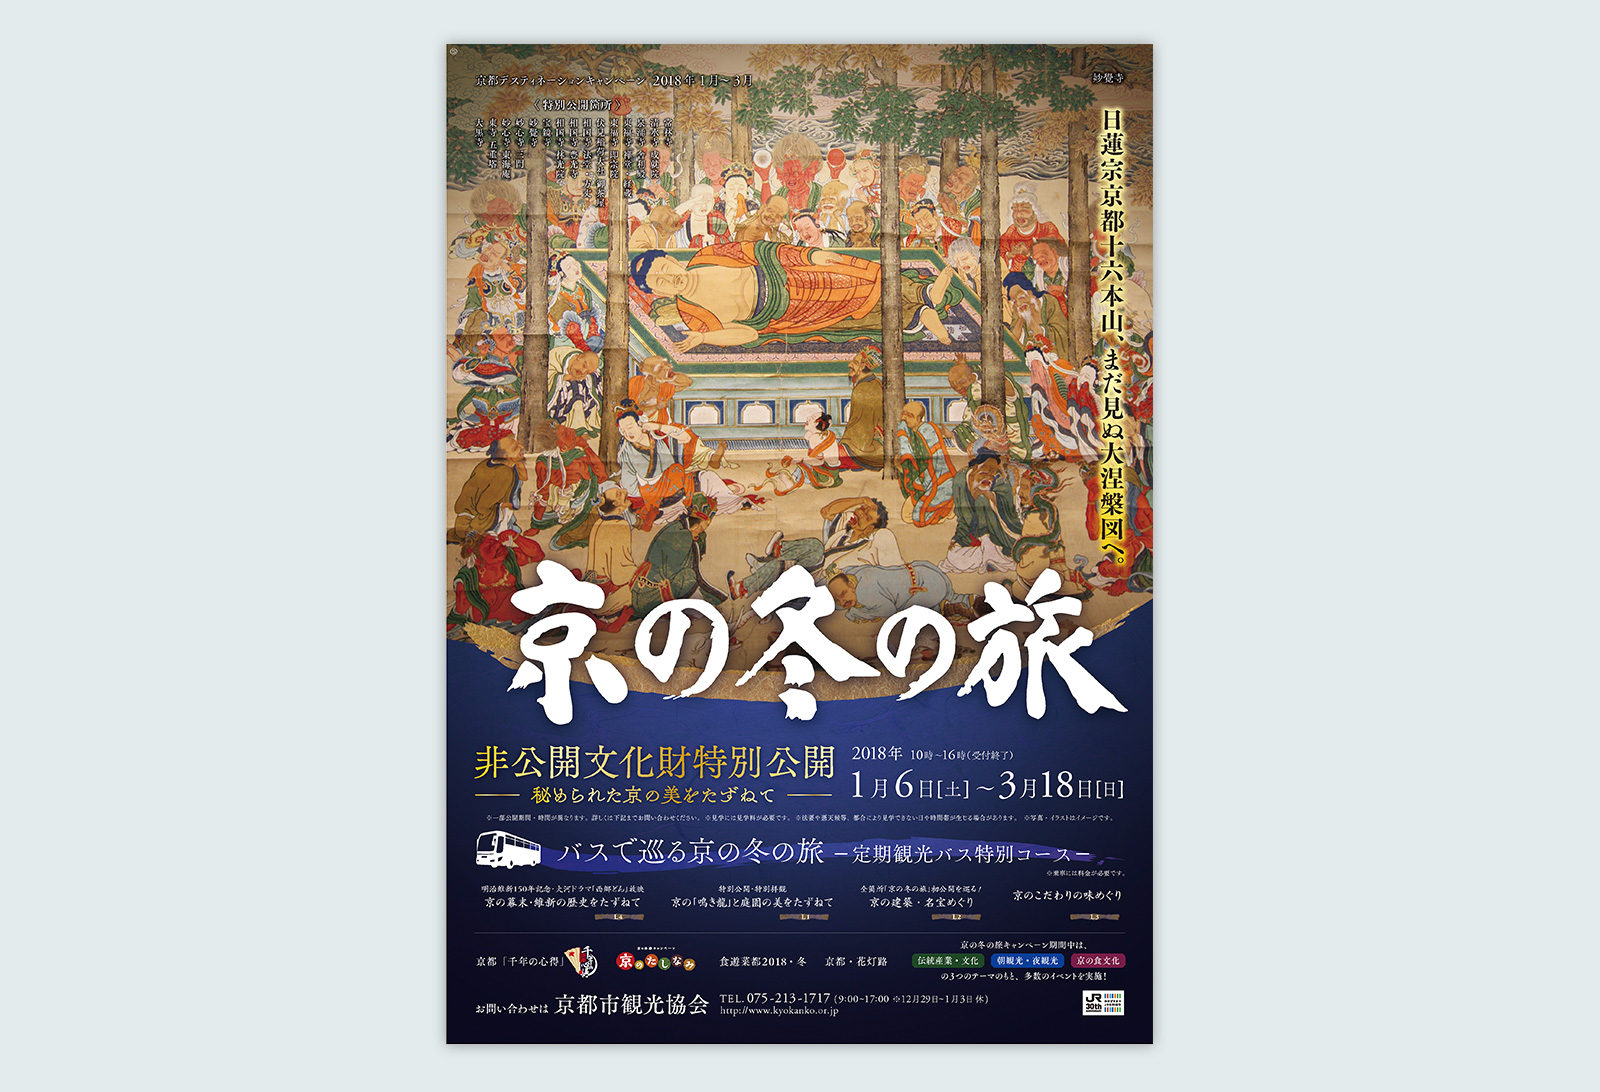 京の冬の旅 2018年度 ポスター